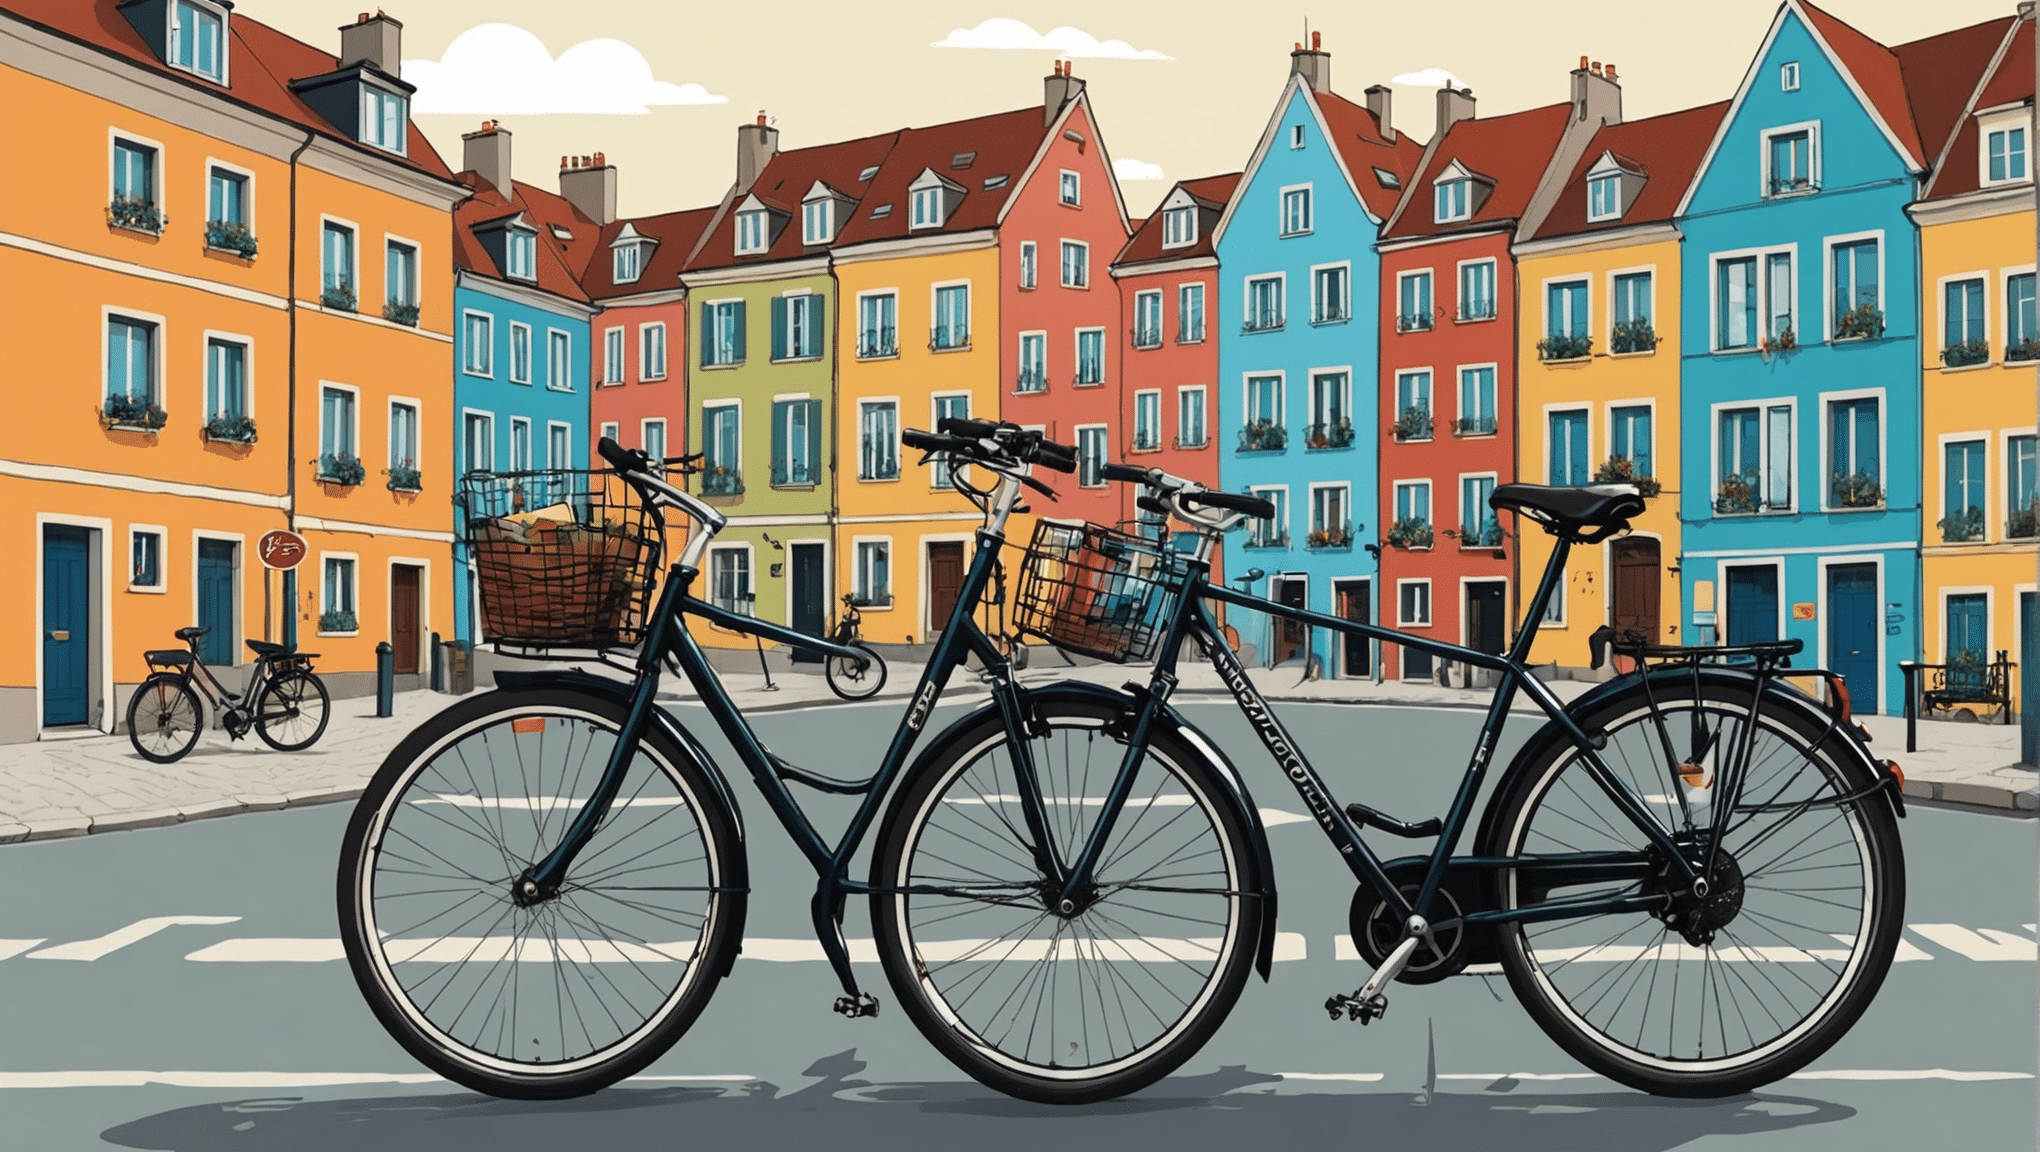 découvrez les destinations incontournables pour les amoureux de voyages à vélo en europe avec notre guide complet. des paysages à couper le souffle et des expériences uniques vous attendent !